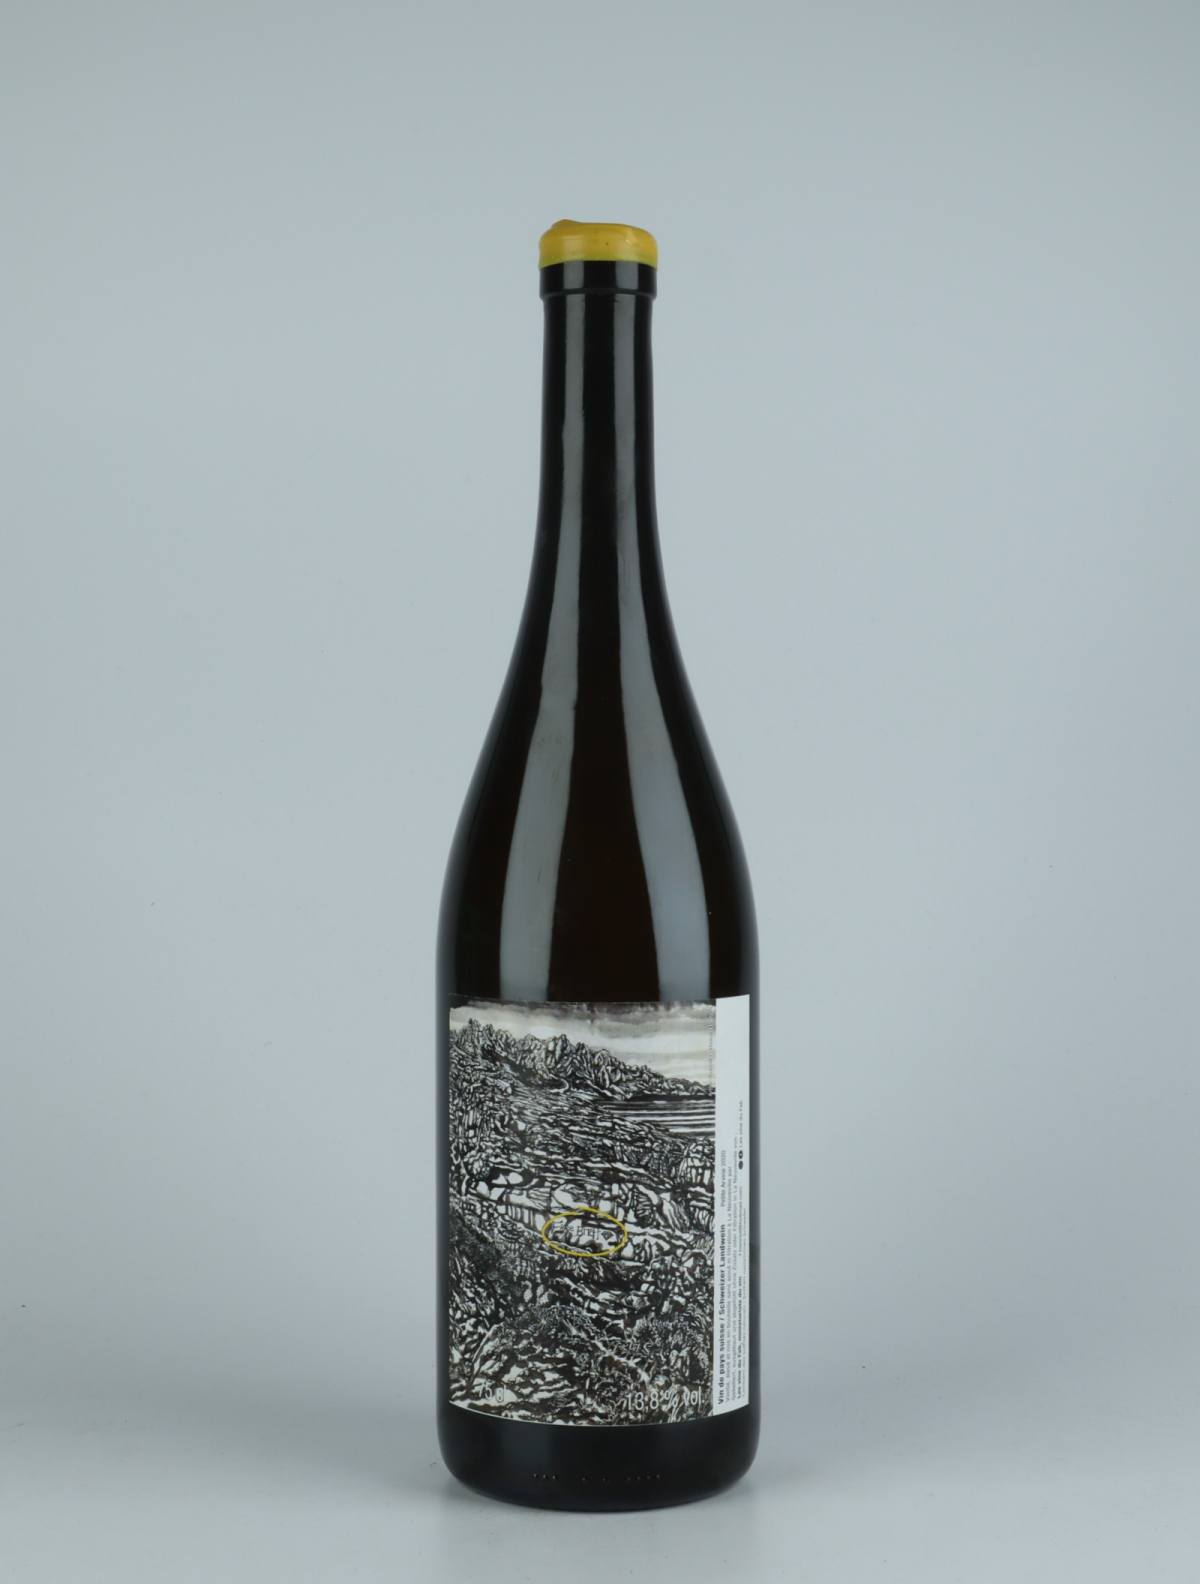 En flaske 2020 Petit Arvine Hvidvin fra Les Vins du Fab, Neuchâtel i Schweiz